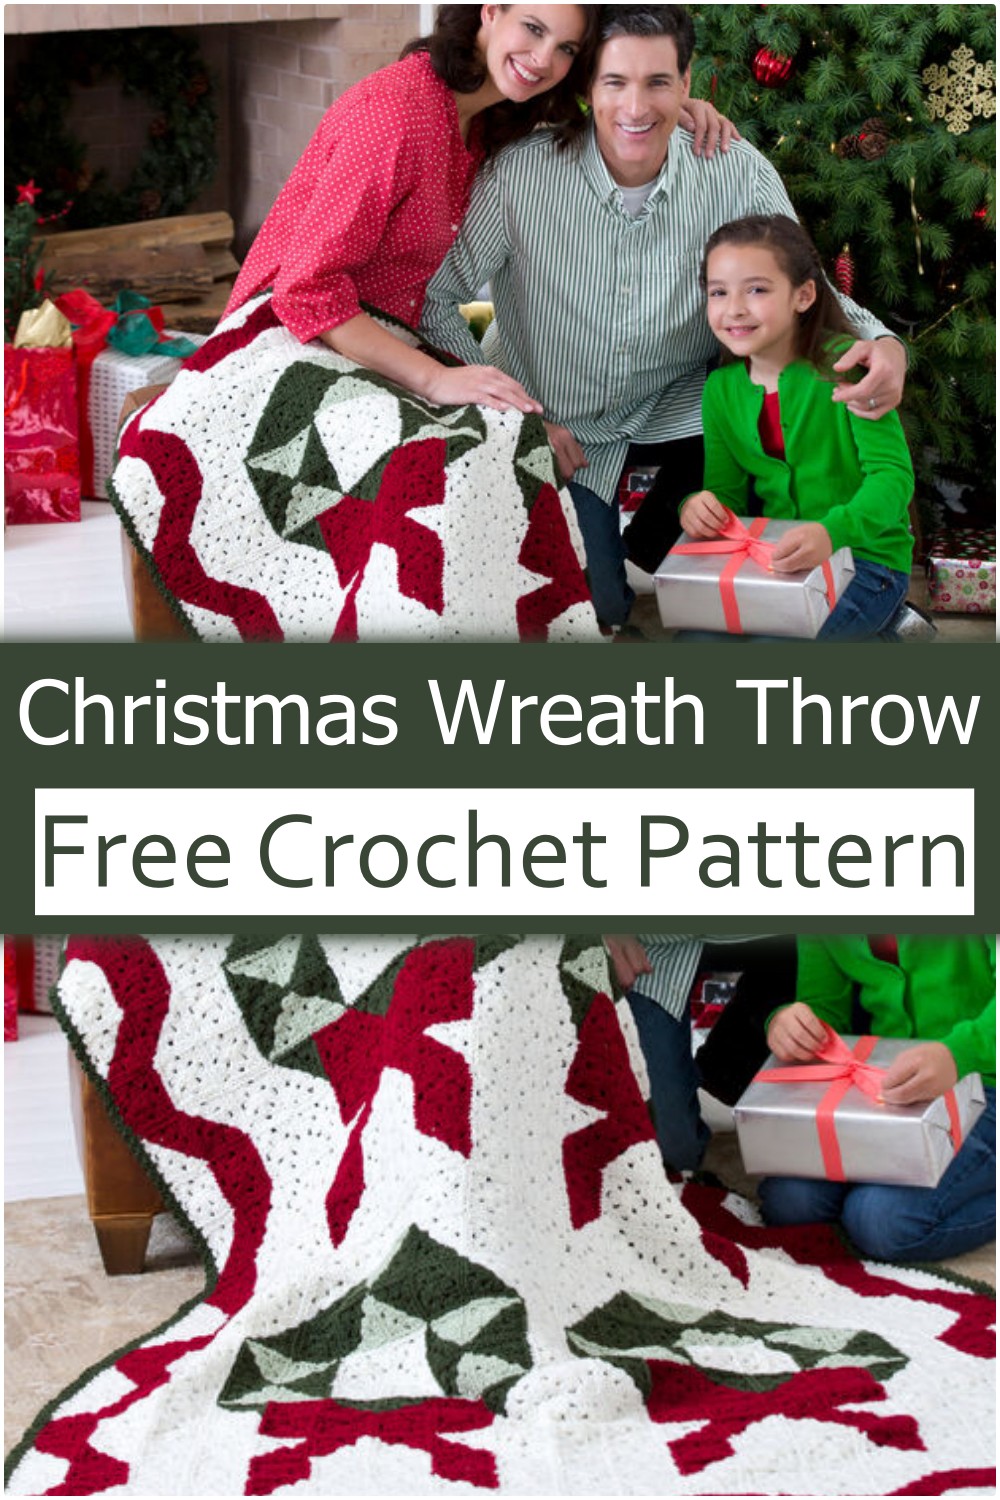  Crochet Christmas Wreath Throw